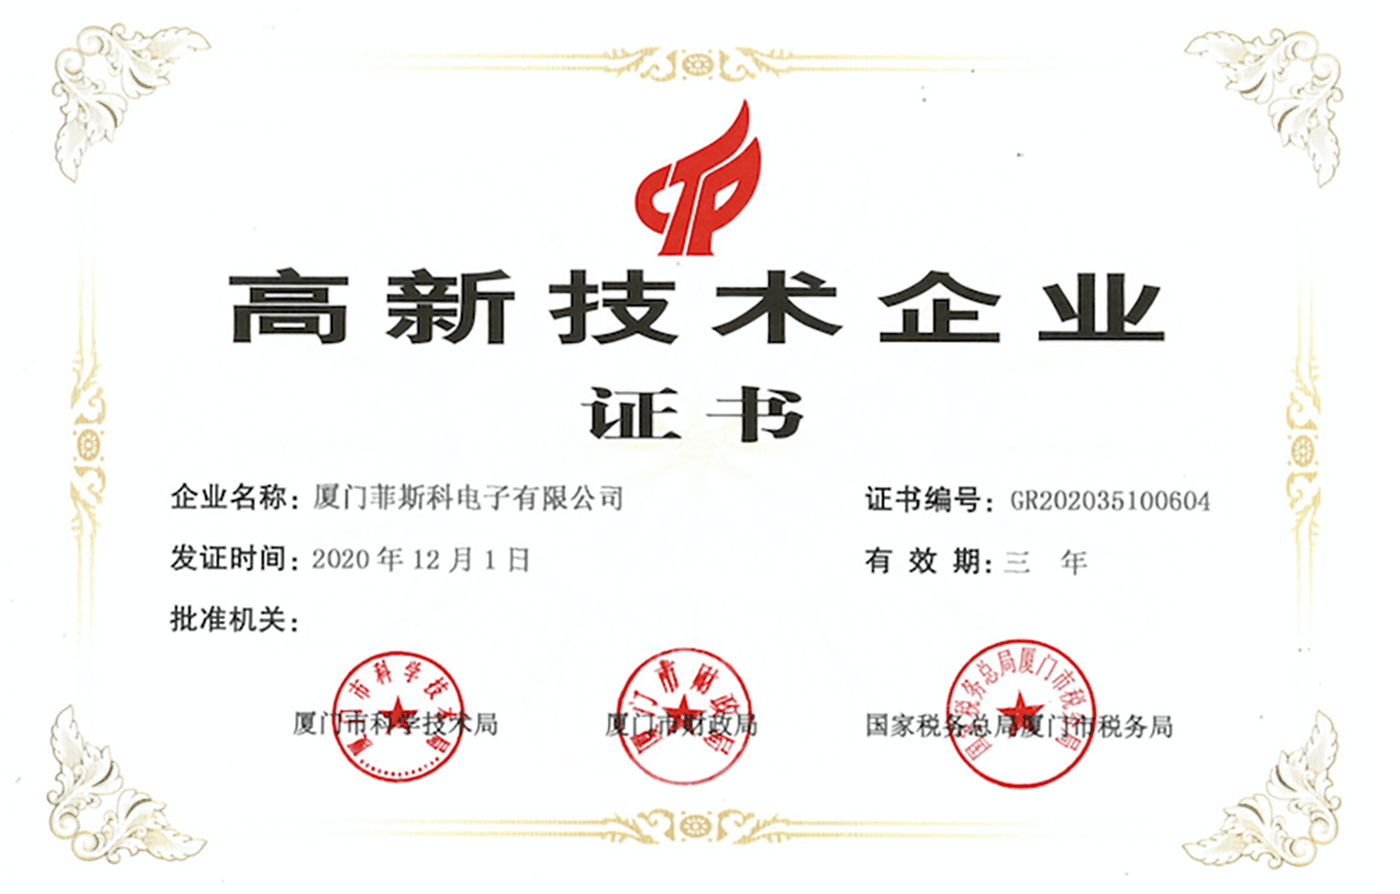 Сертификат компании высоких технологий.png